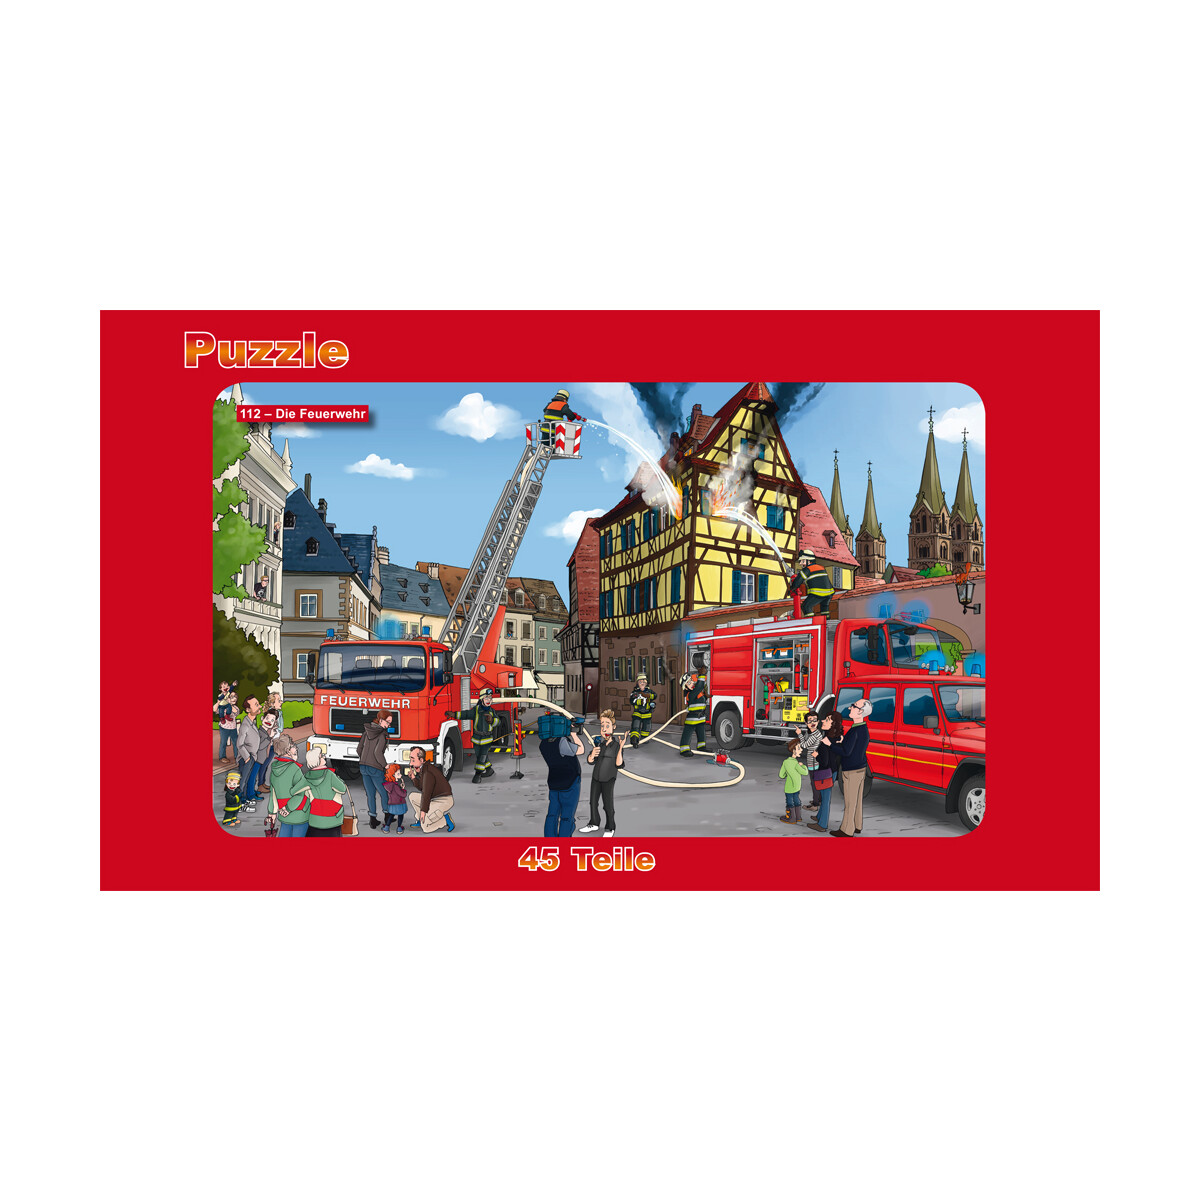 Puzzle 112 Feuerwehr  | Brandbekämpfung | 45 Teile |...